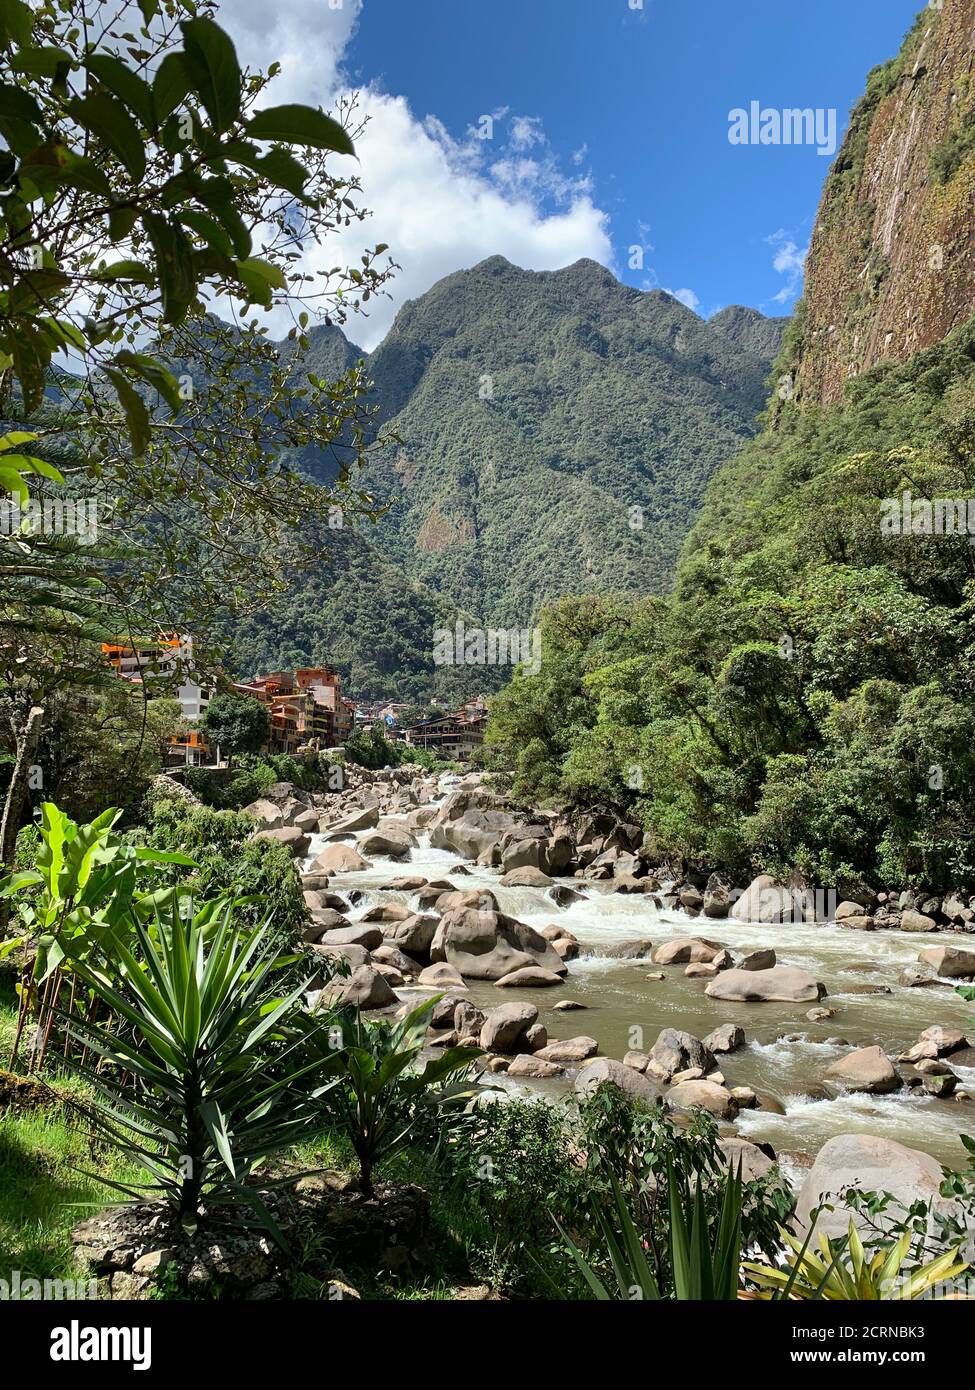 Rivière Urubamba. Ville Aguas Calientes, région de Cusco, Pérou. Rio Urubamba est l'un des principaux fleuves péruviens et une partie du bassin amazonien.Willkamayu rivière sacrée Banque D'Images